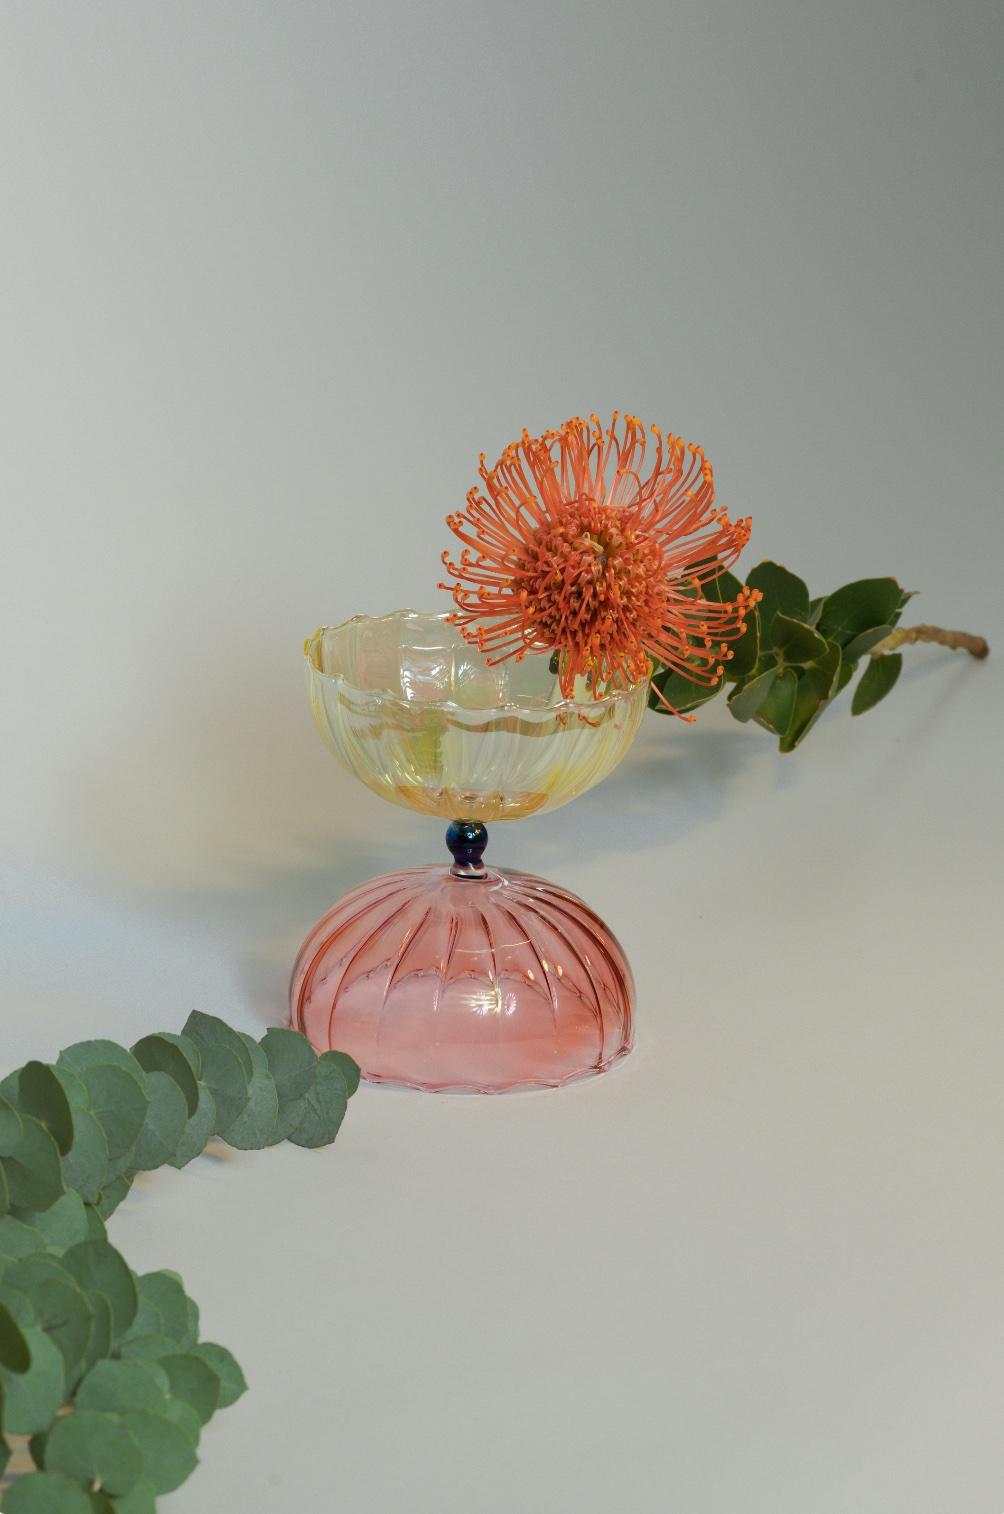 Handgeblasene Blumenvase, hergestellt in Italien. Zarte Farben und weiche Formen machen dieses Objekt zum perfekten Willkommensgruß für Ihr Zuhause und lassen Sie Ihre Münzen oder Schlüssel hinein.
